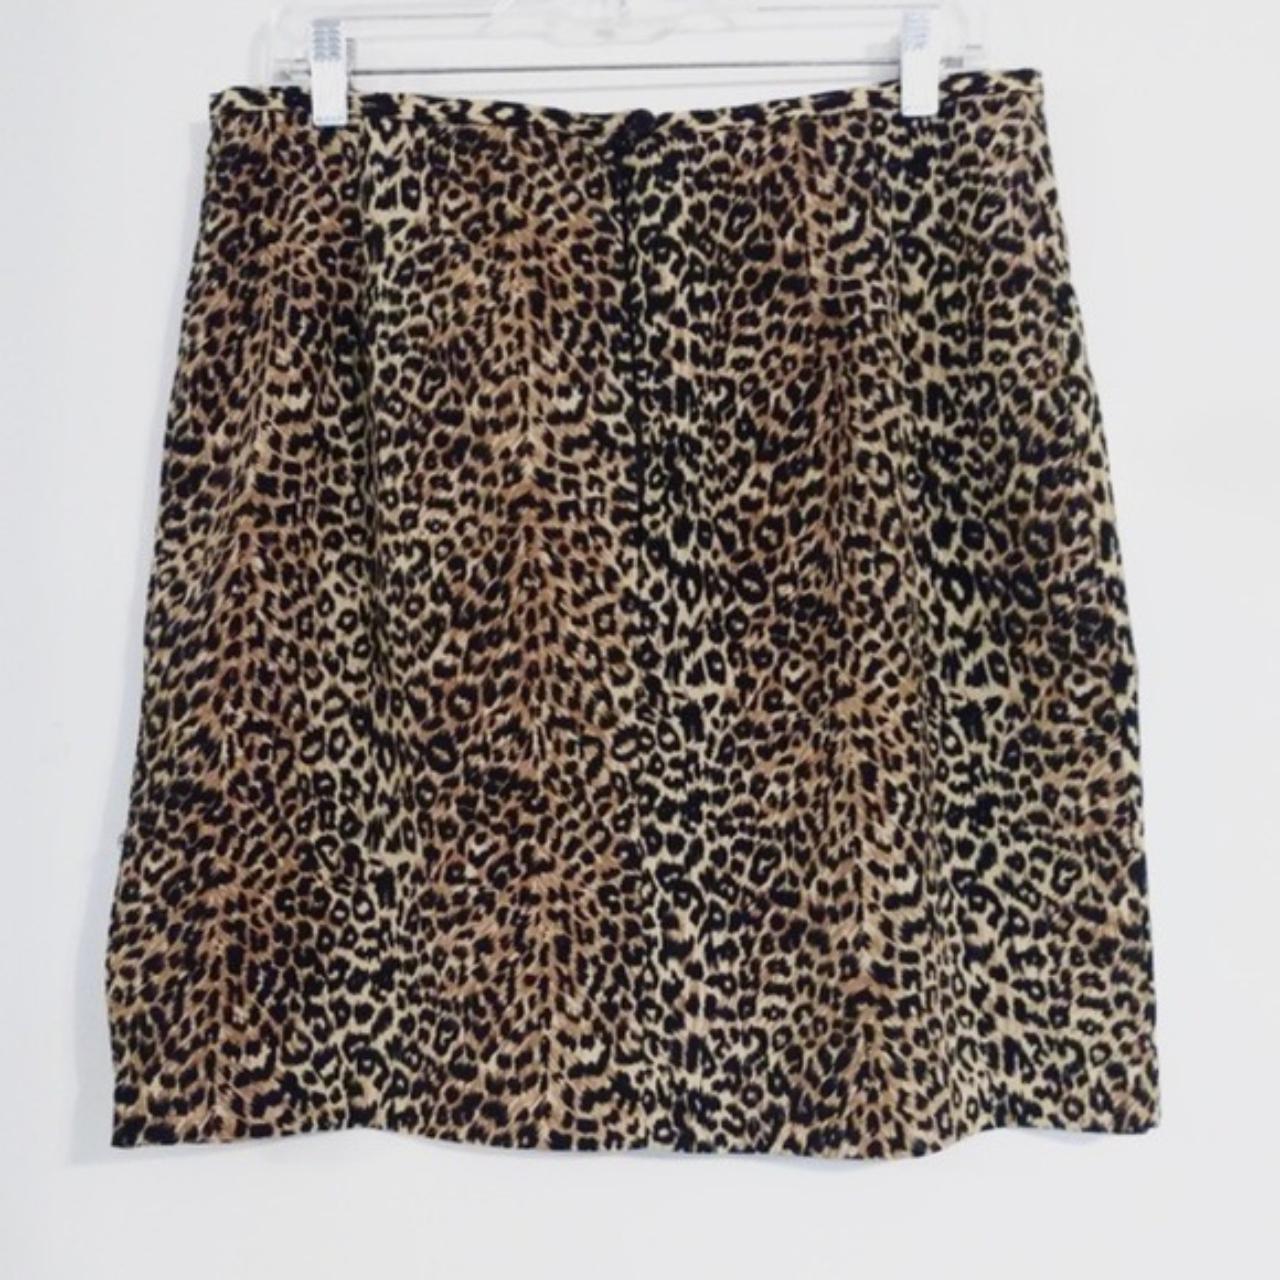 Product Image 2 - Vintage Leopard Print Mini Skirt